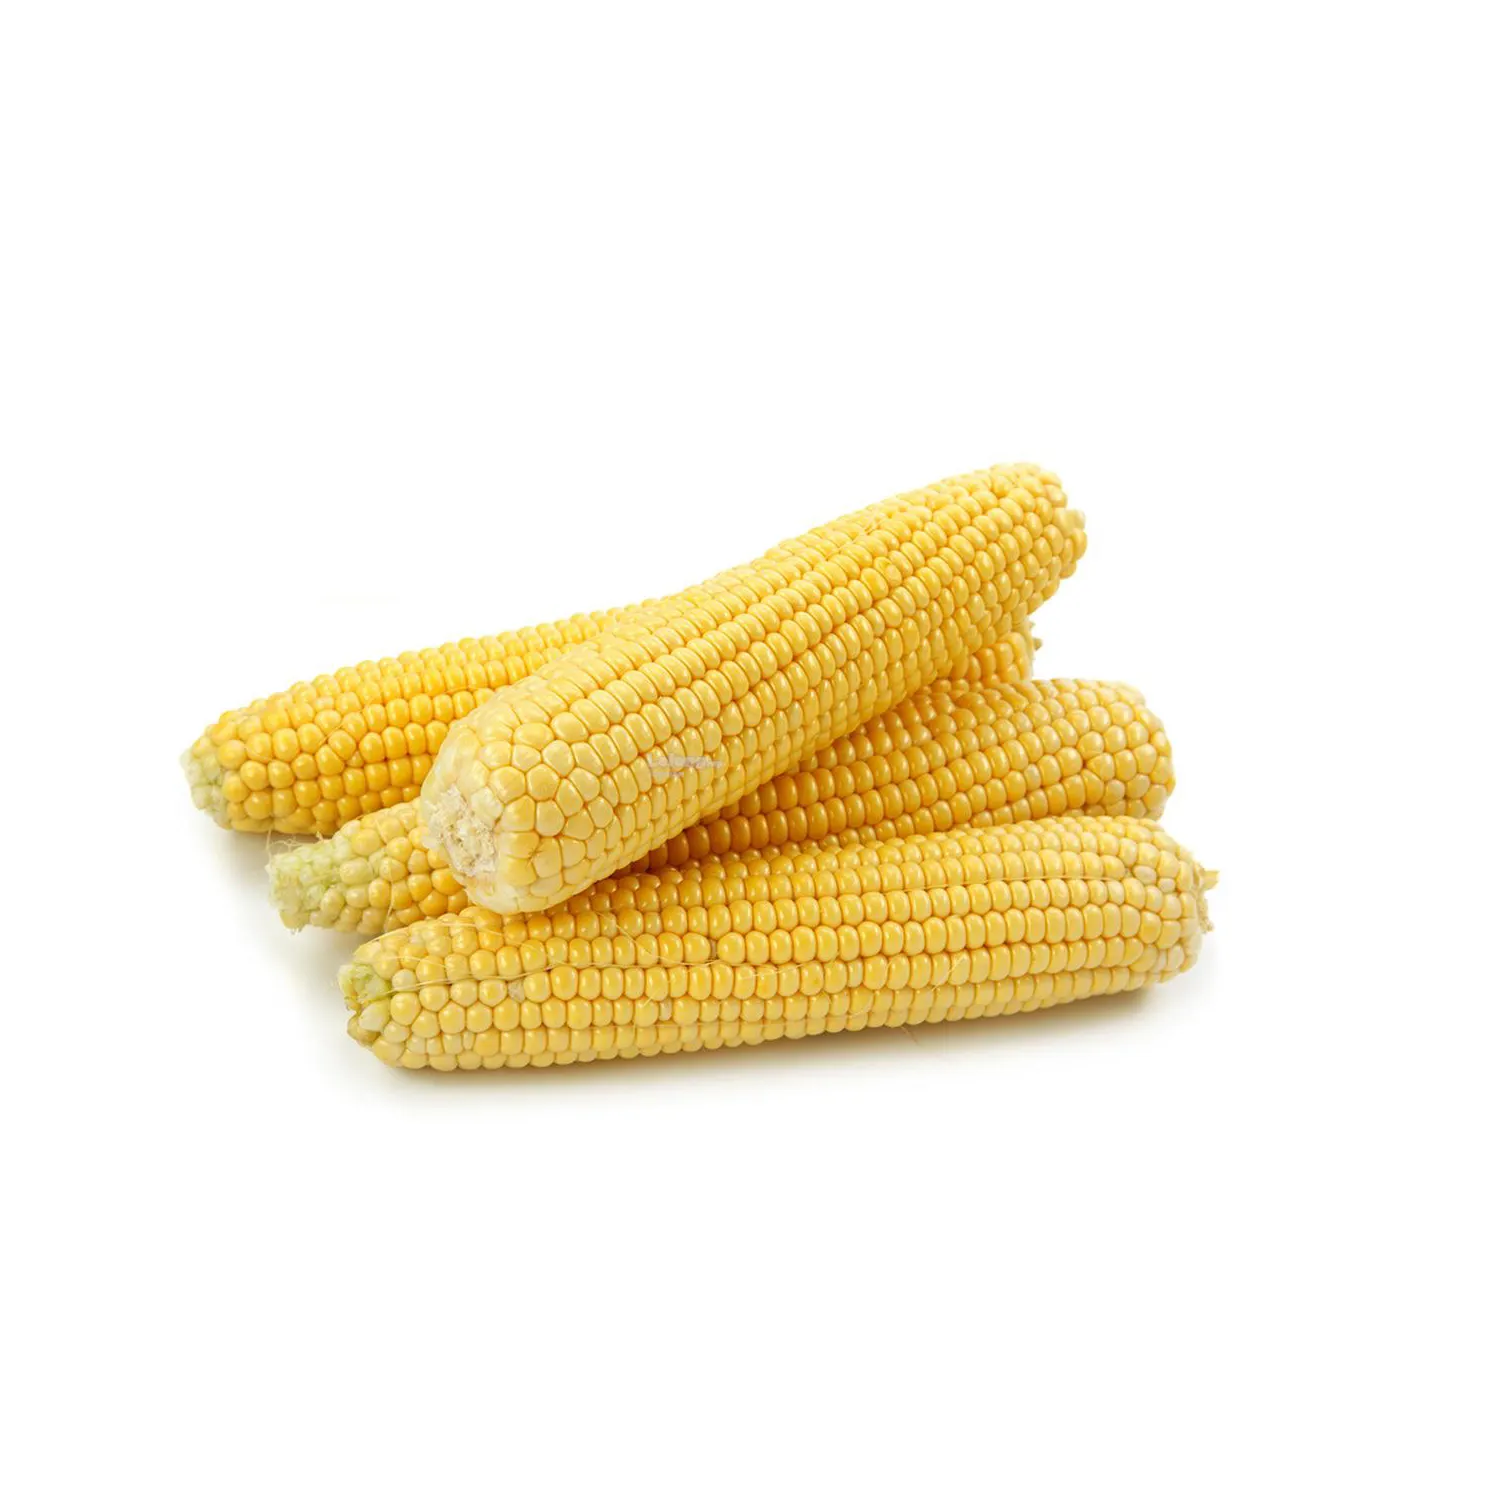 2020 Желтая Кукуруза/не содержащая ГМО Желтая Кукуруза оптом от производителя из Таиланда оптовая продажа для экспорта новейшего урожая